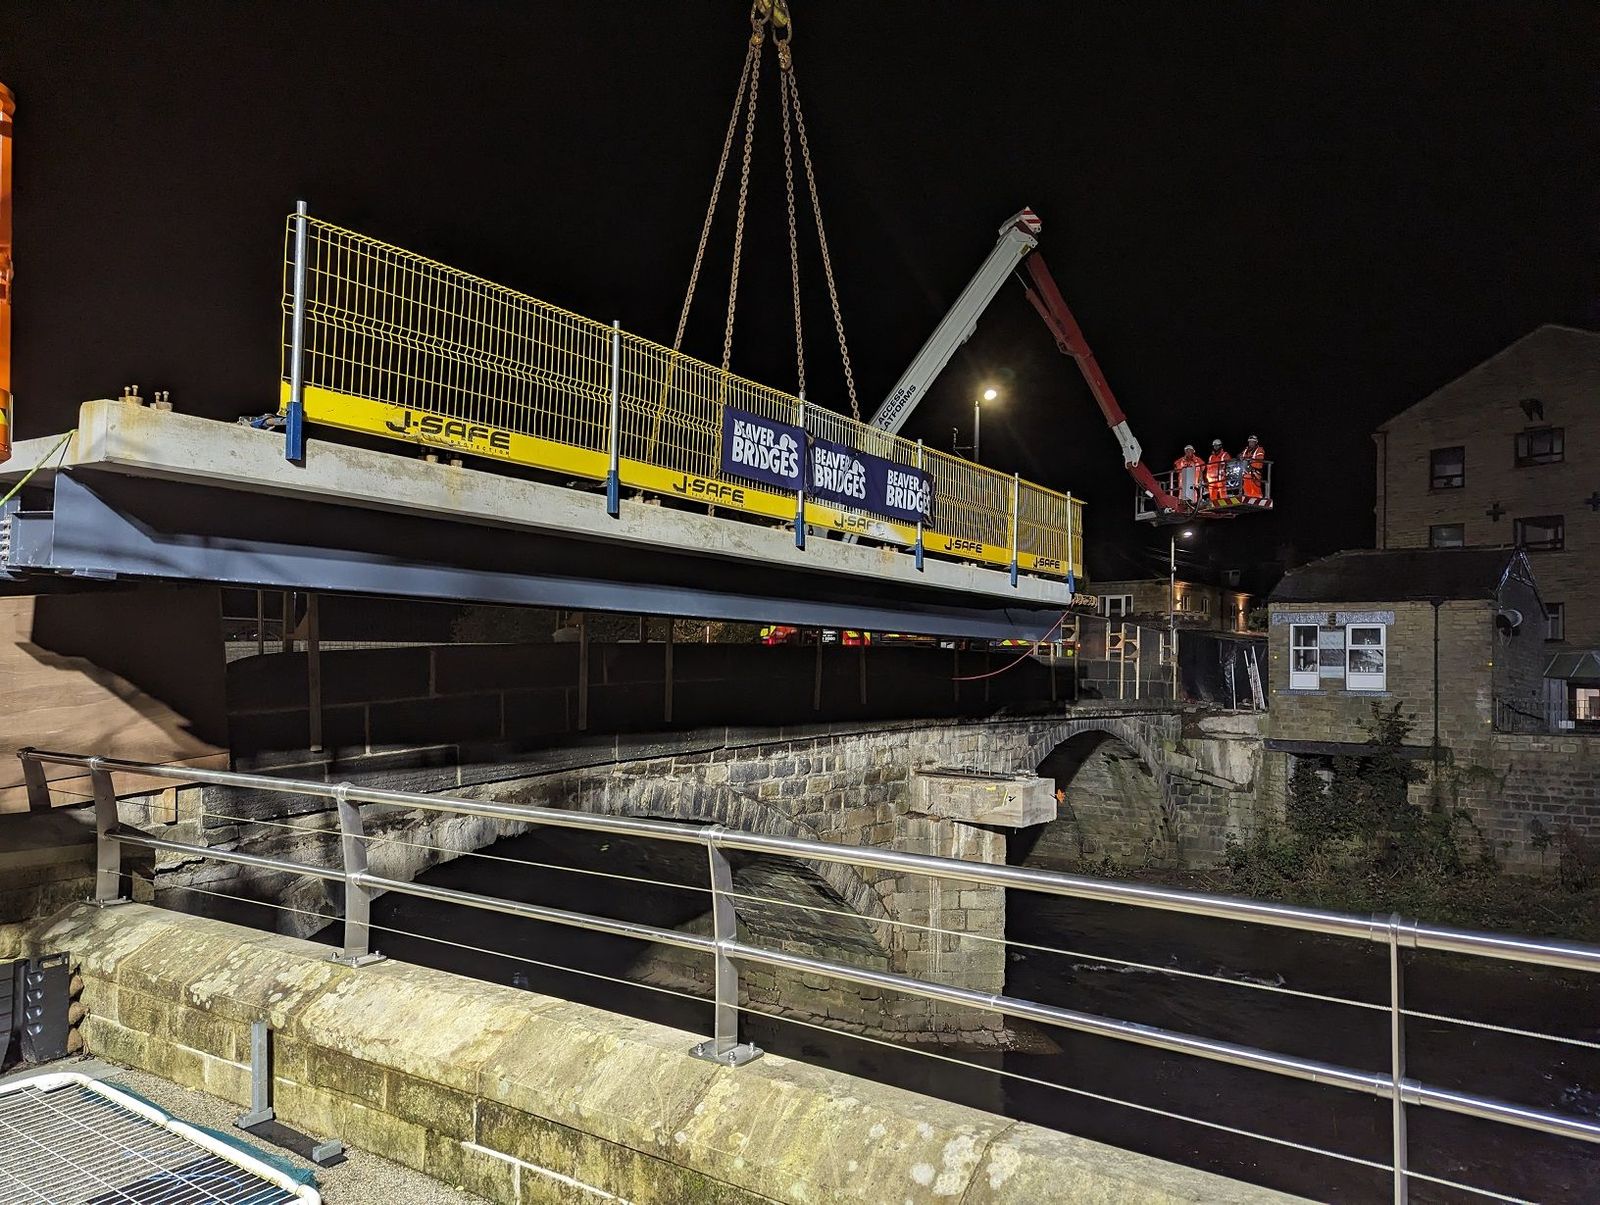 New footbridge in Mytholmroyd taking shape